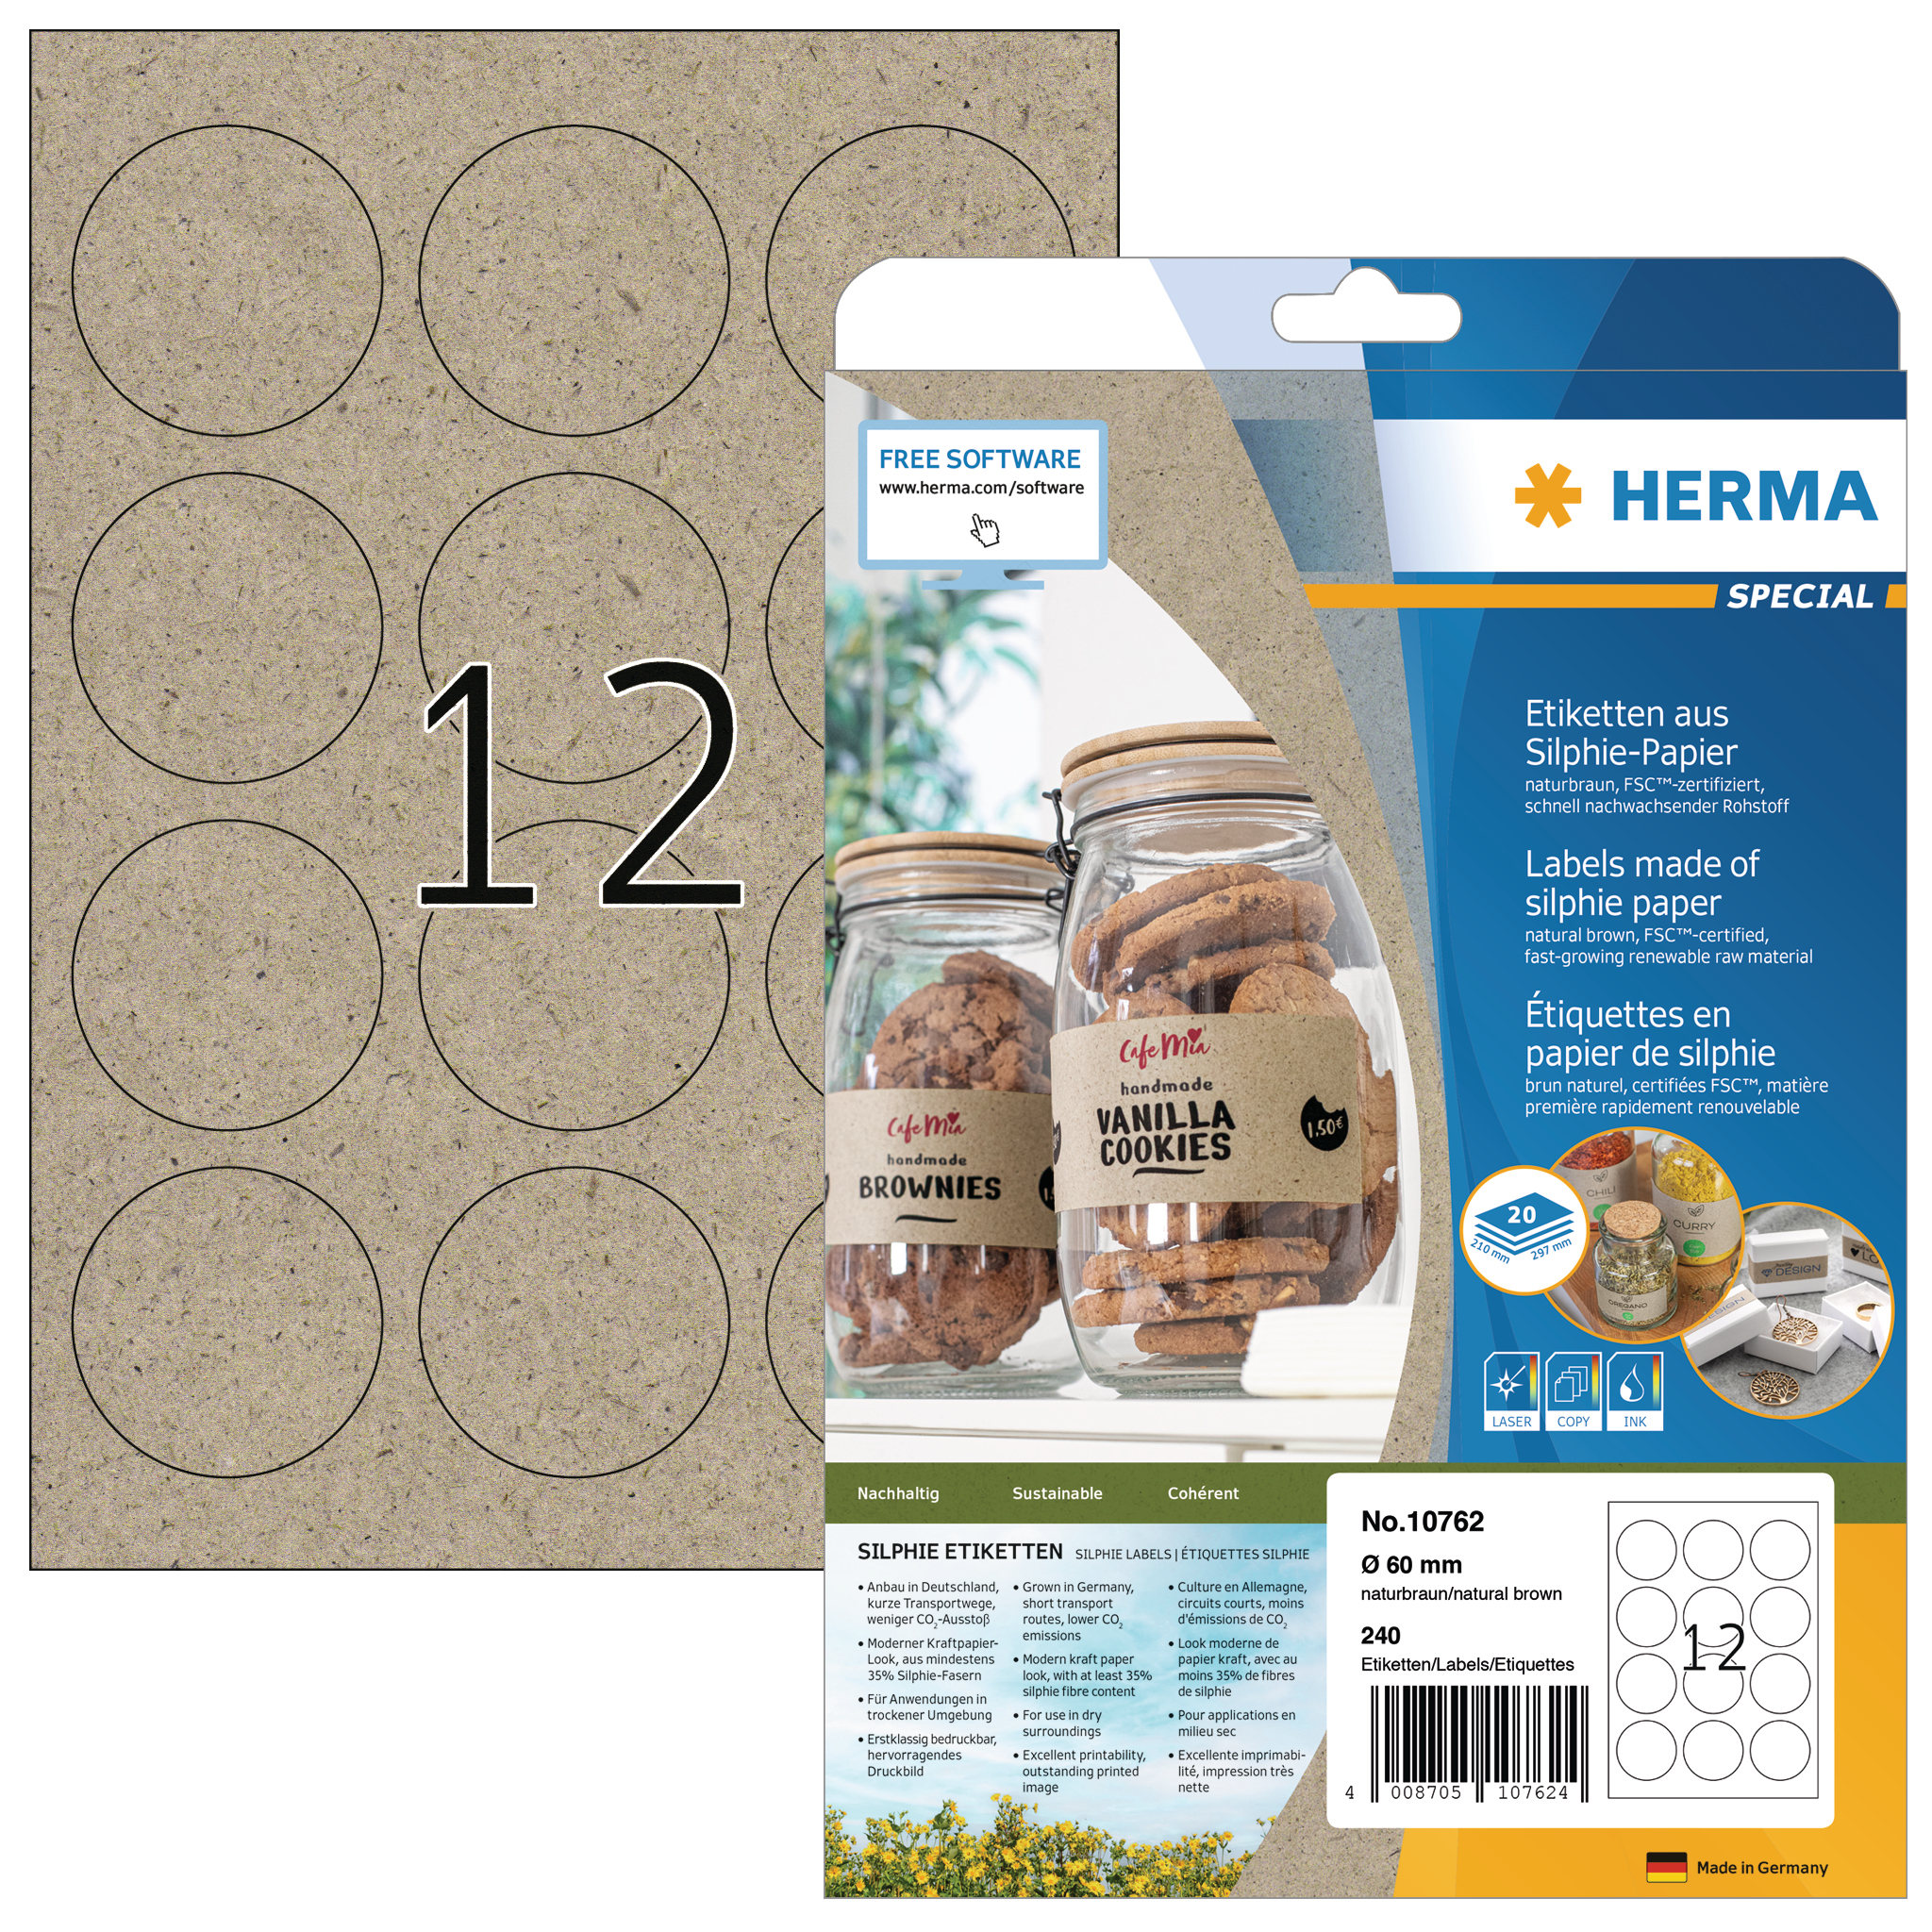 HERMA Étiquettes rond 60 mm 10762 en papier silphie 240 pcs.